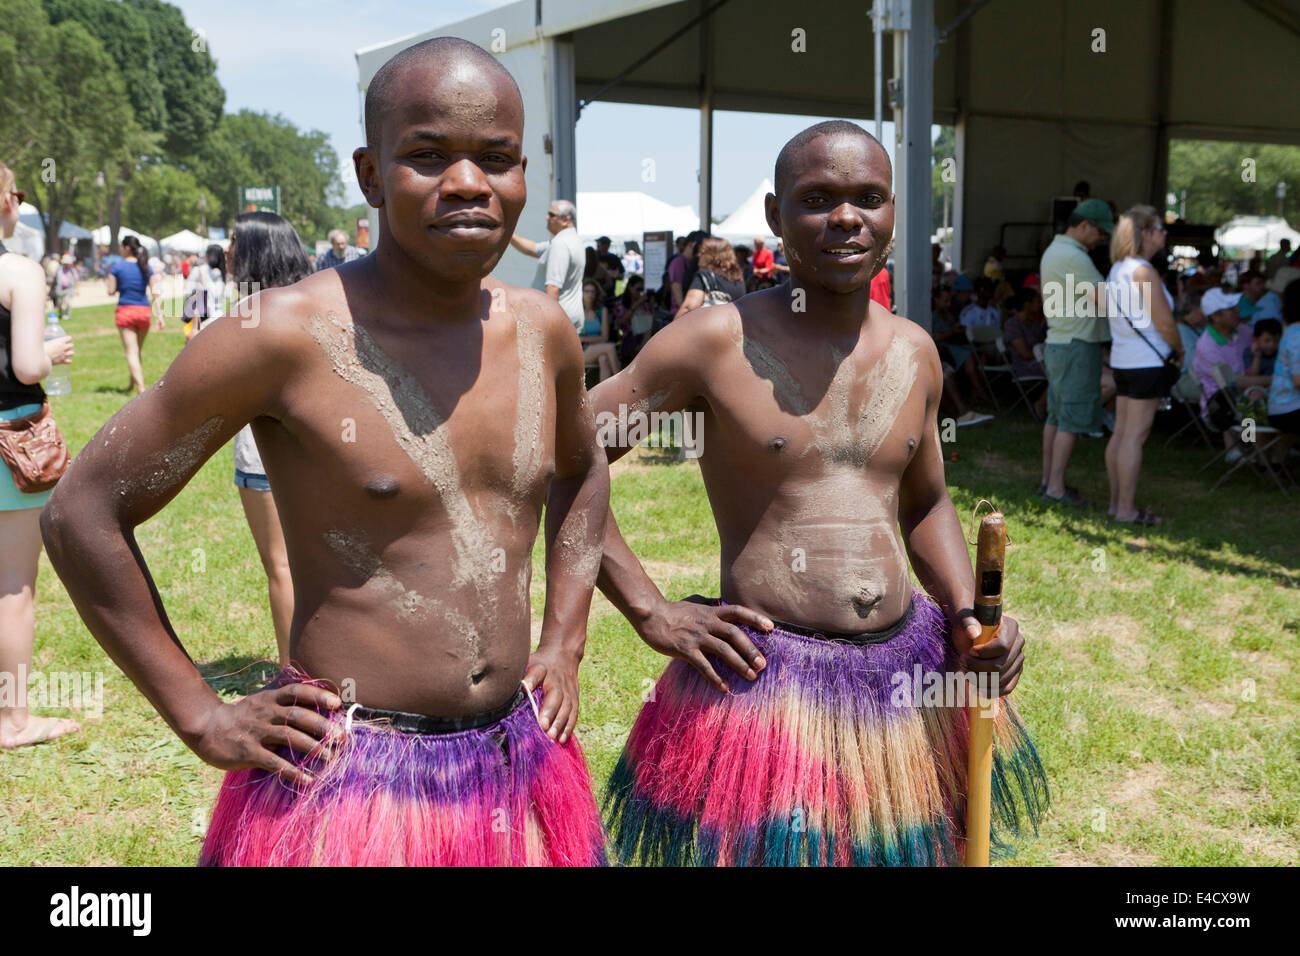 Kenyan traditionnelle folk dancers au festival culturel - Washington, DC USA Banque D'Images